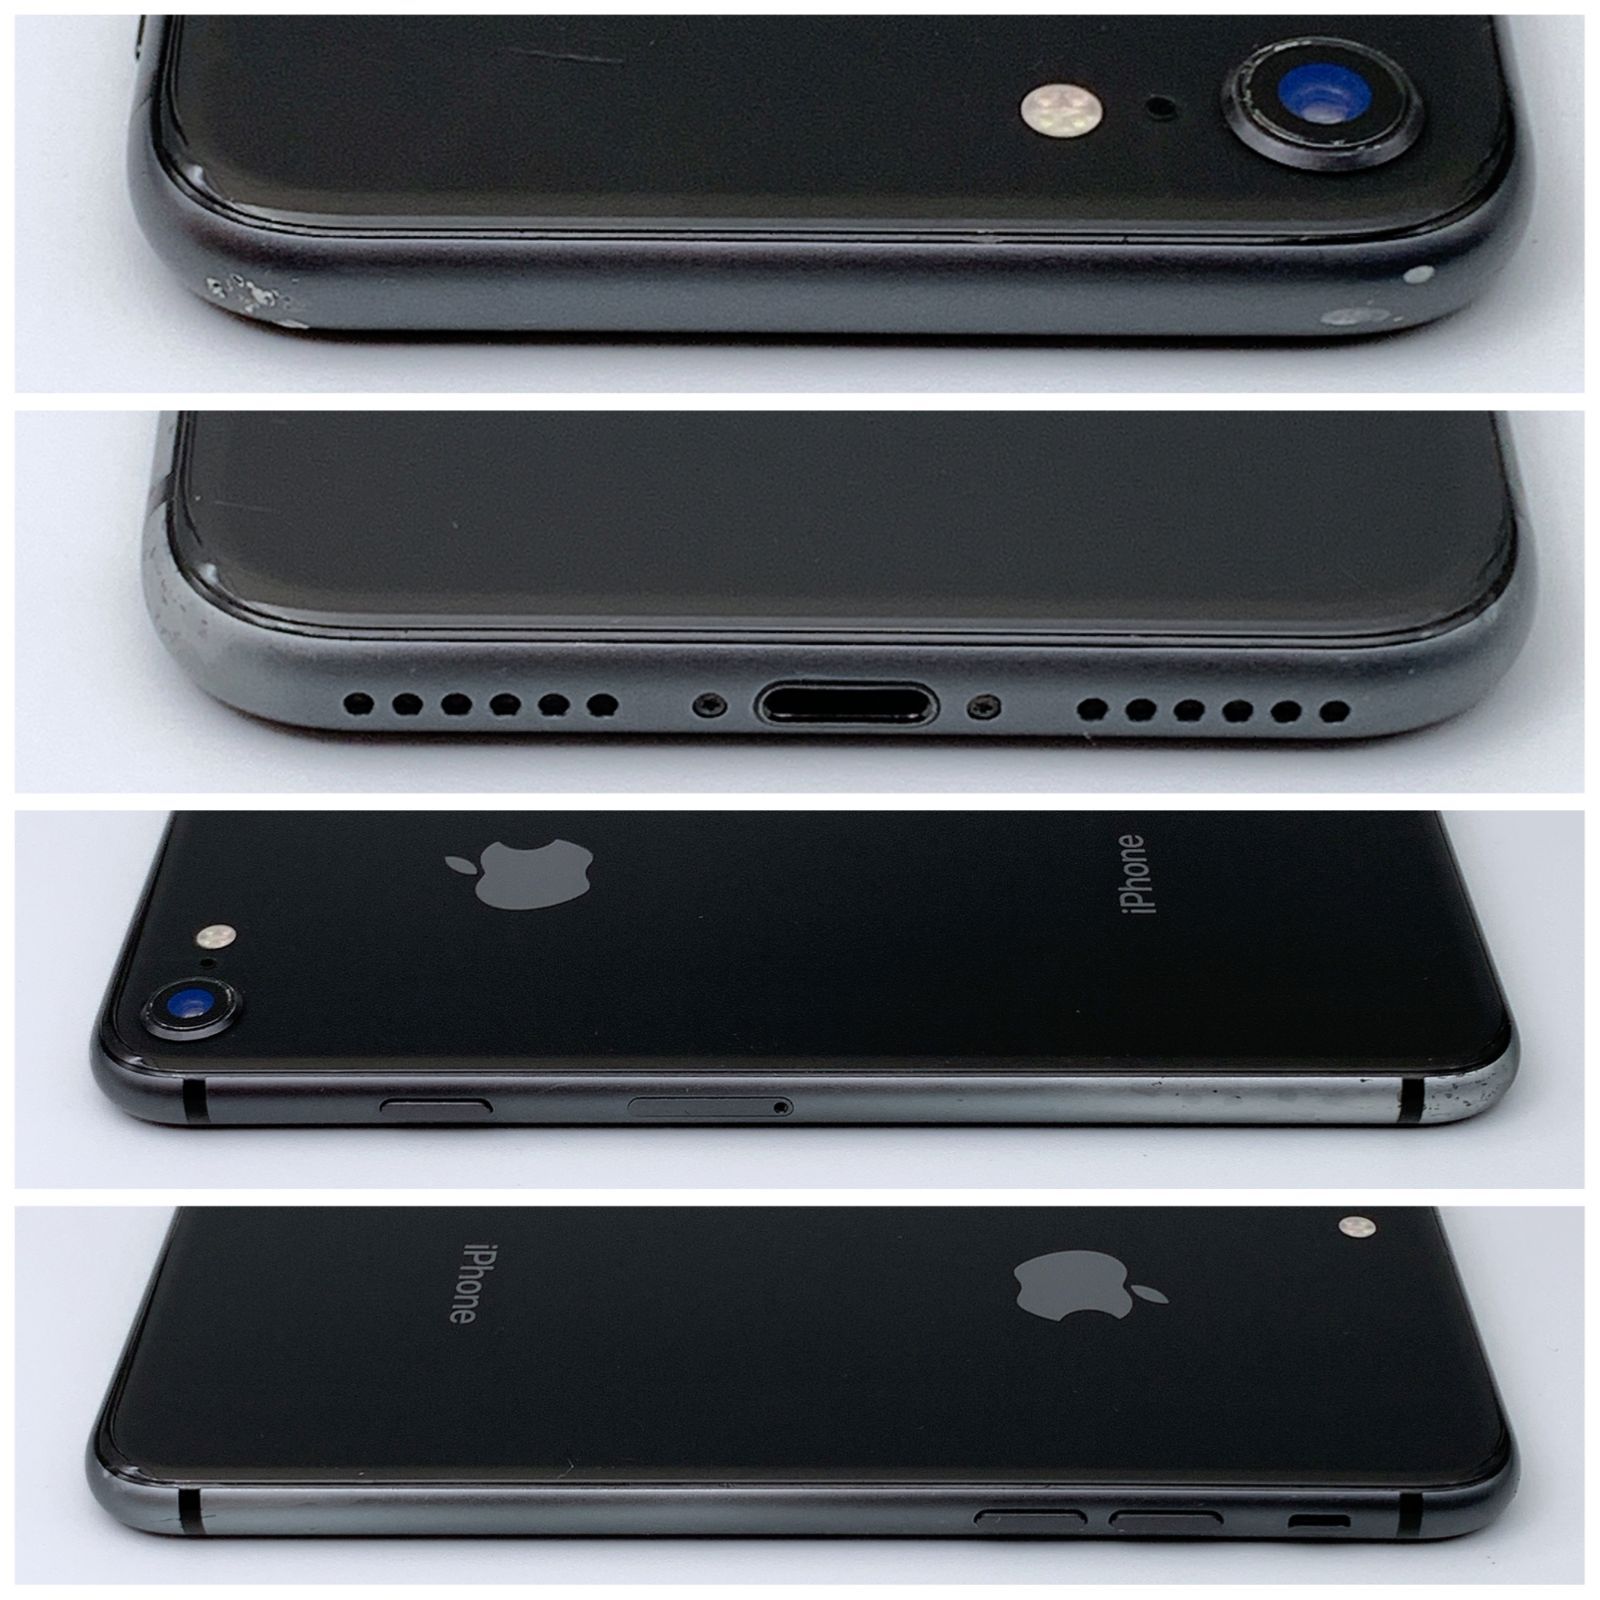 限定カラー iPhone8 64GB スペースグレイ【SIMフリー】新品バッテリー ...